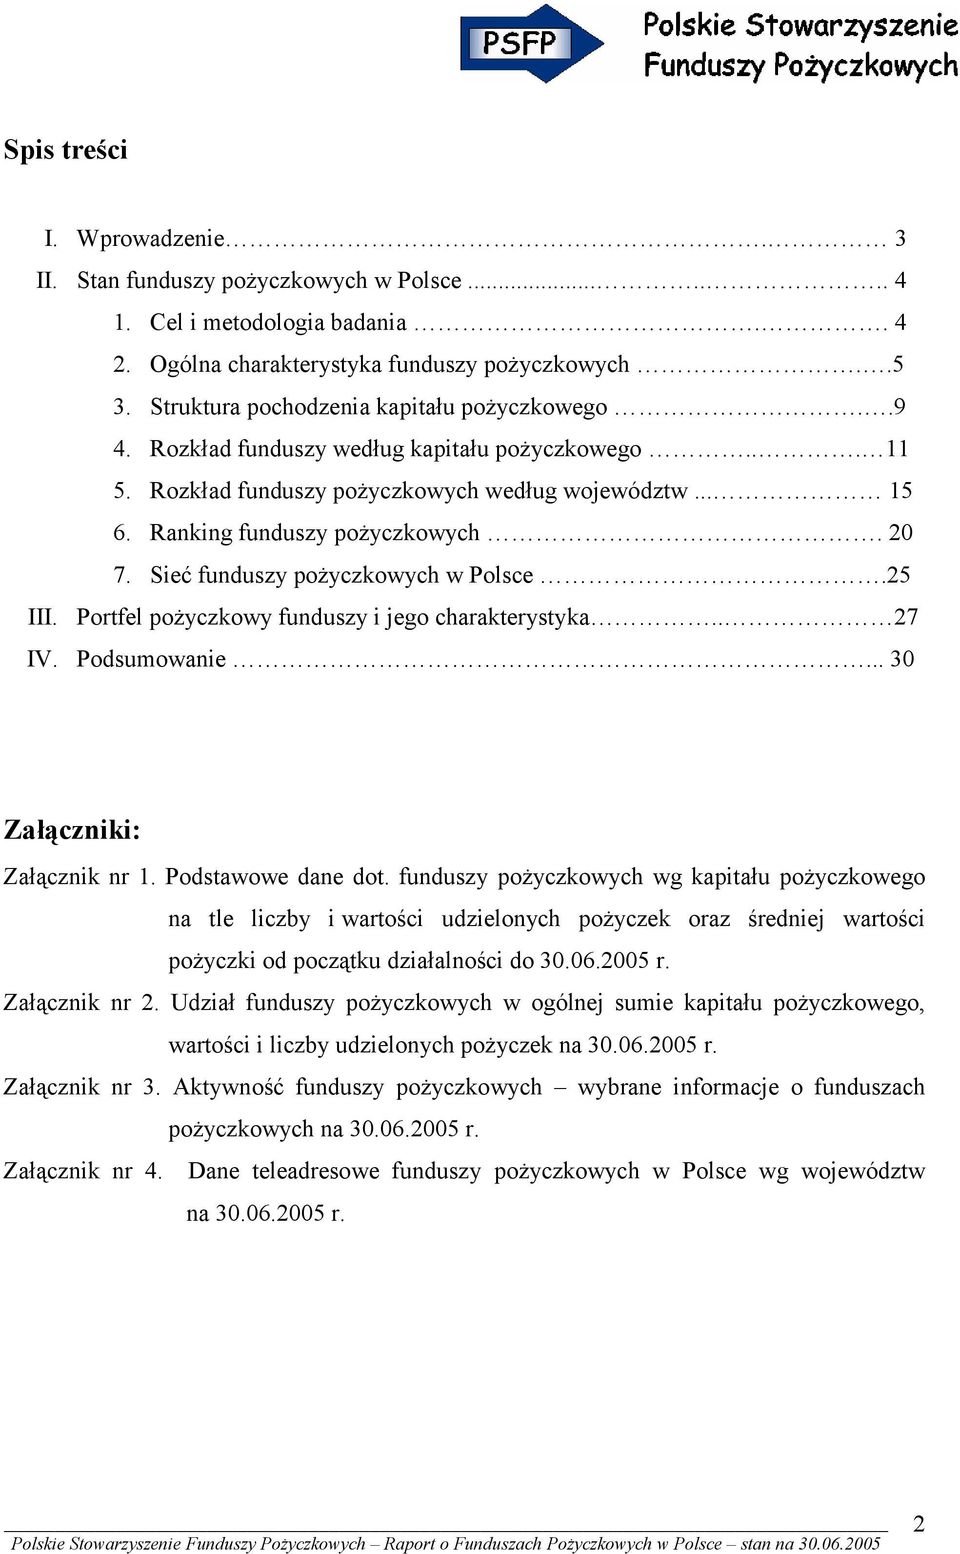 Sieć funduszy pożyczkowych w Polsce.25 III. Portfel pożyczkowy funduszy i jego charakterystyka.. 27 IV. Podsumowanie... 30 Załączniki: Załącznik nr 1. Podstawowe dane dot.